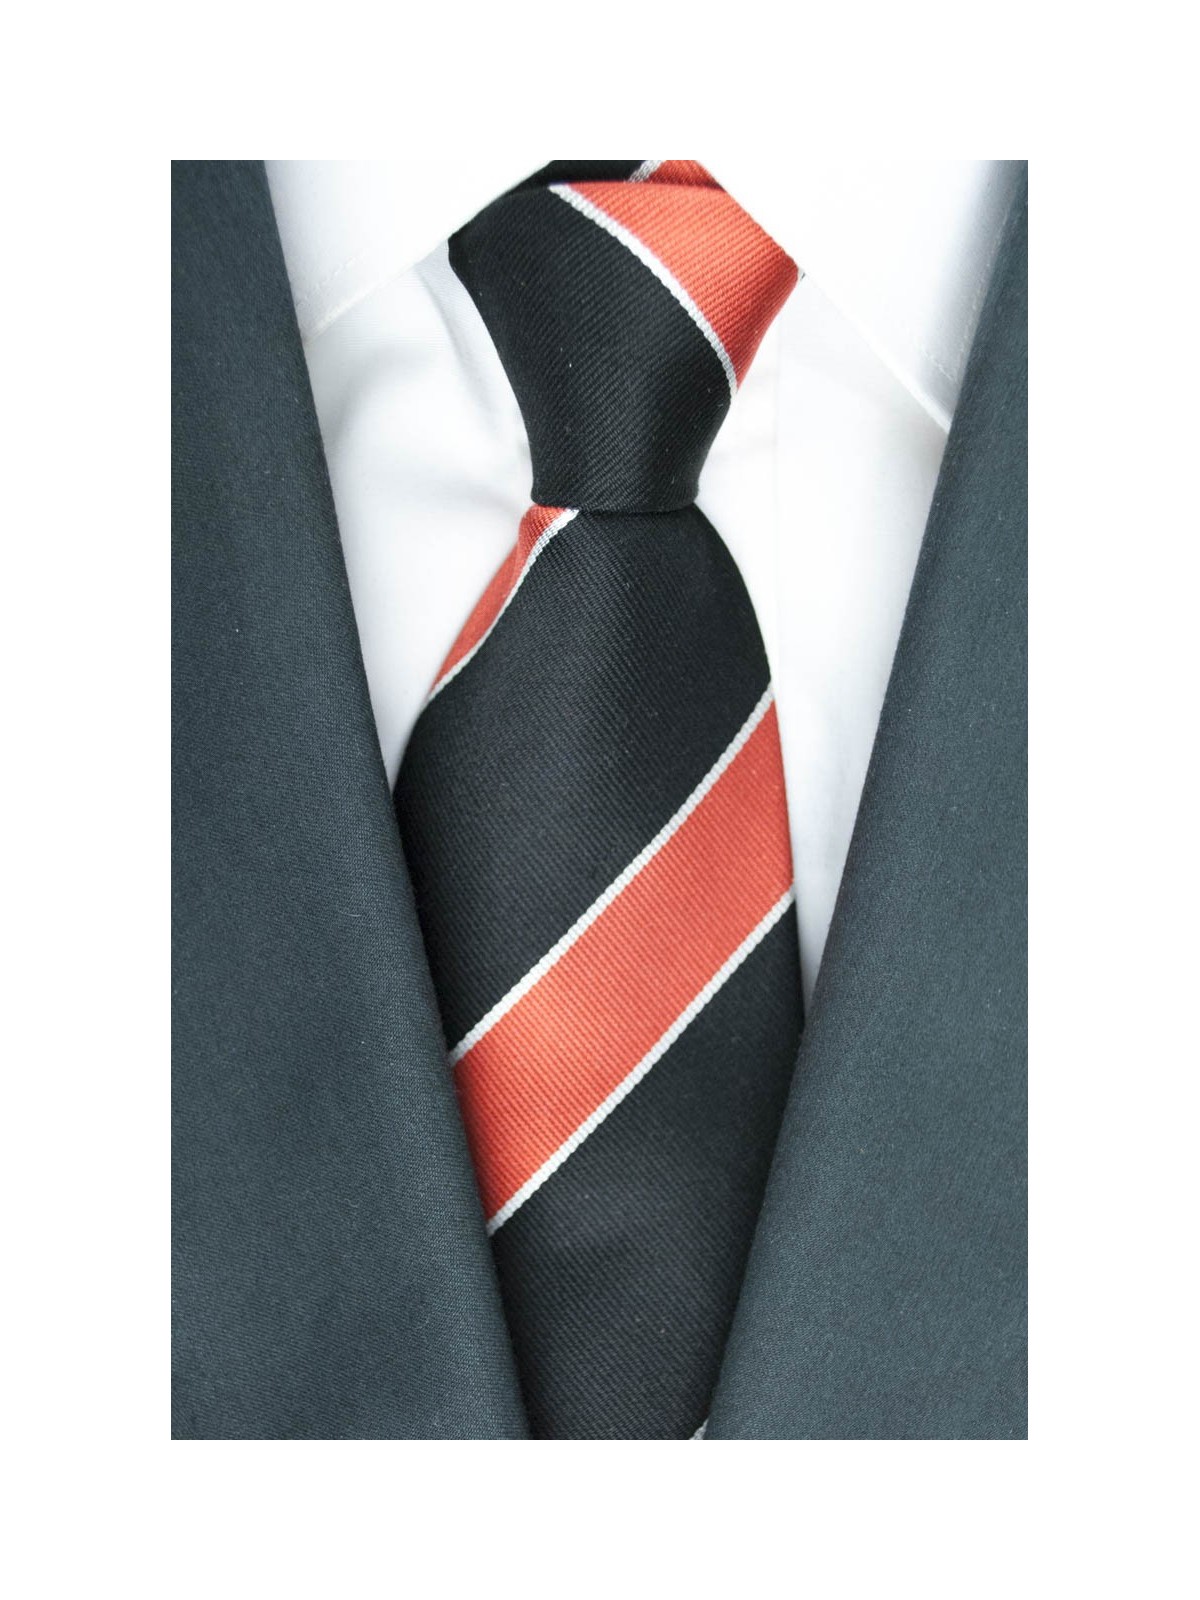 Krawatte Regimental in Schwarz und Orange - 100% Reine Seide